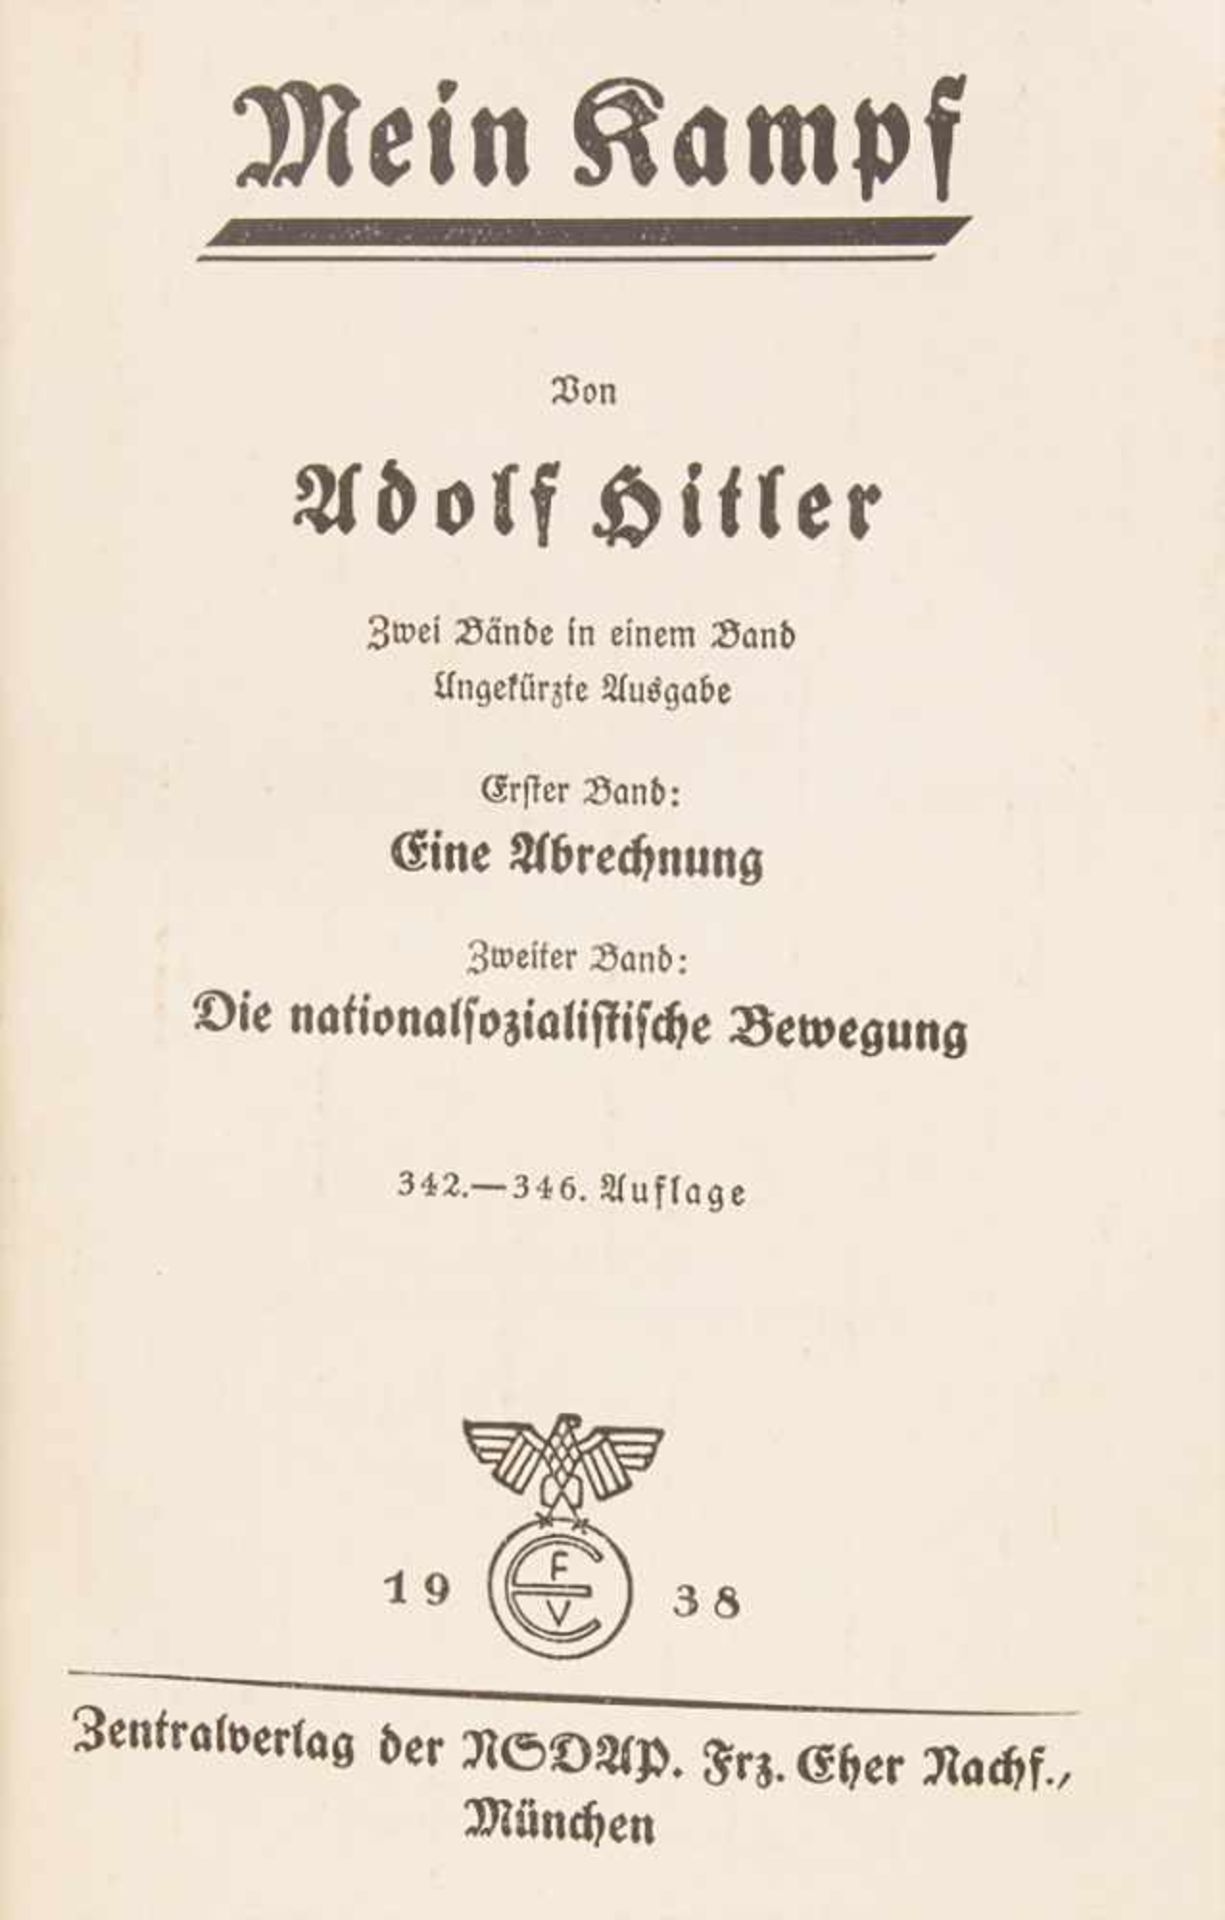 Adolf Hitler: 'Mein Kampf', 3. ReichTitel: 'Mein Kampf' von Adolf Hitler, zwei Bände in einem